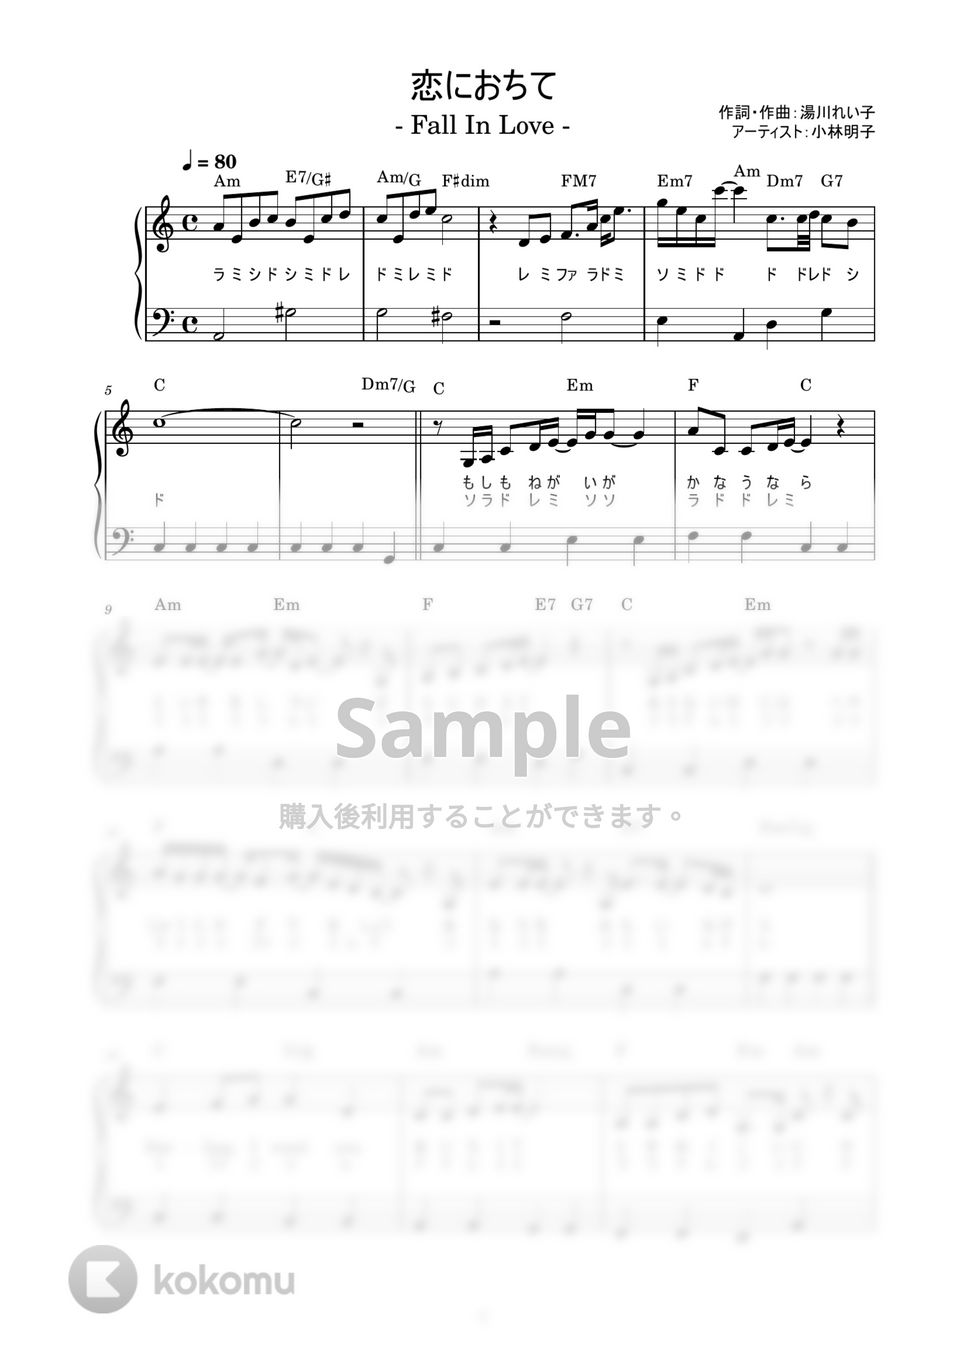 小林明子 - 恋におちて -Fall In Love- (かんたん / 歌詞付き / ドレミ付き / 初心者) by piano.tokyo